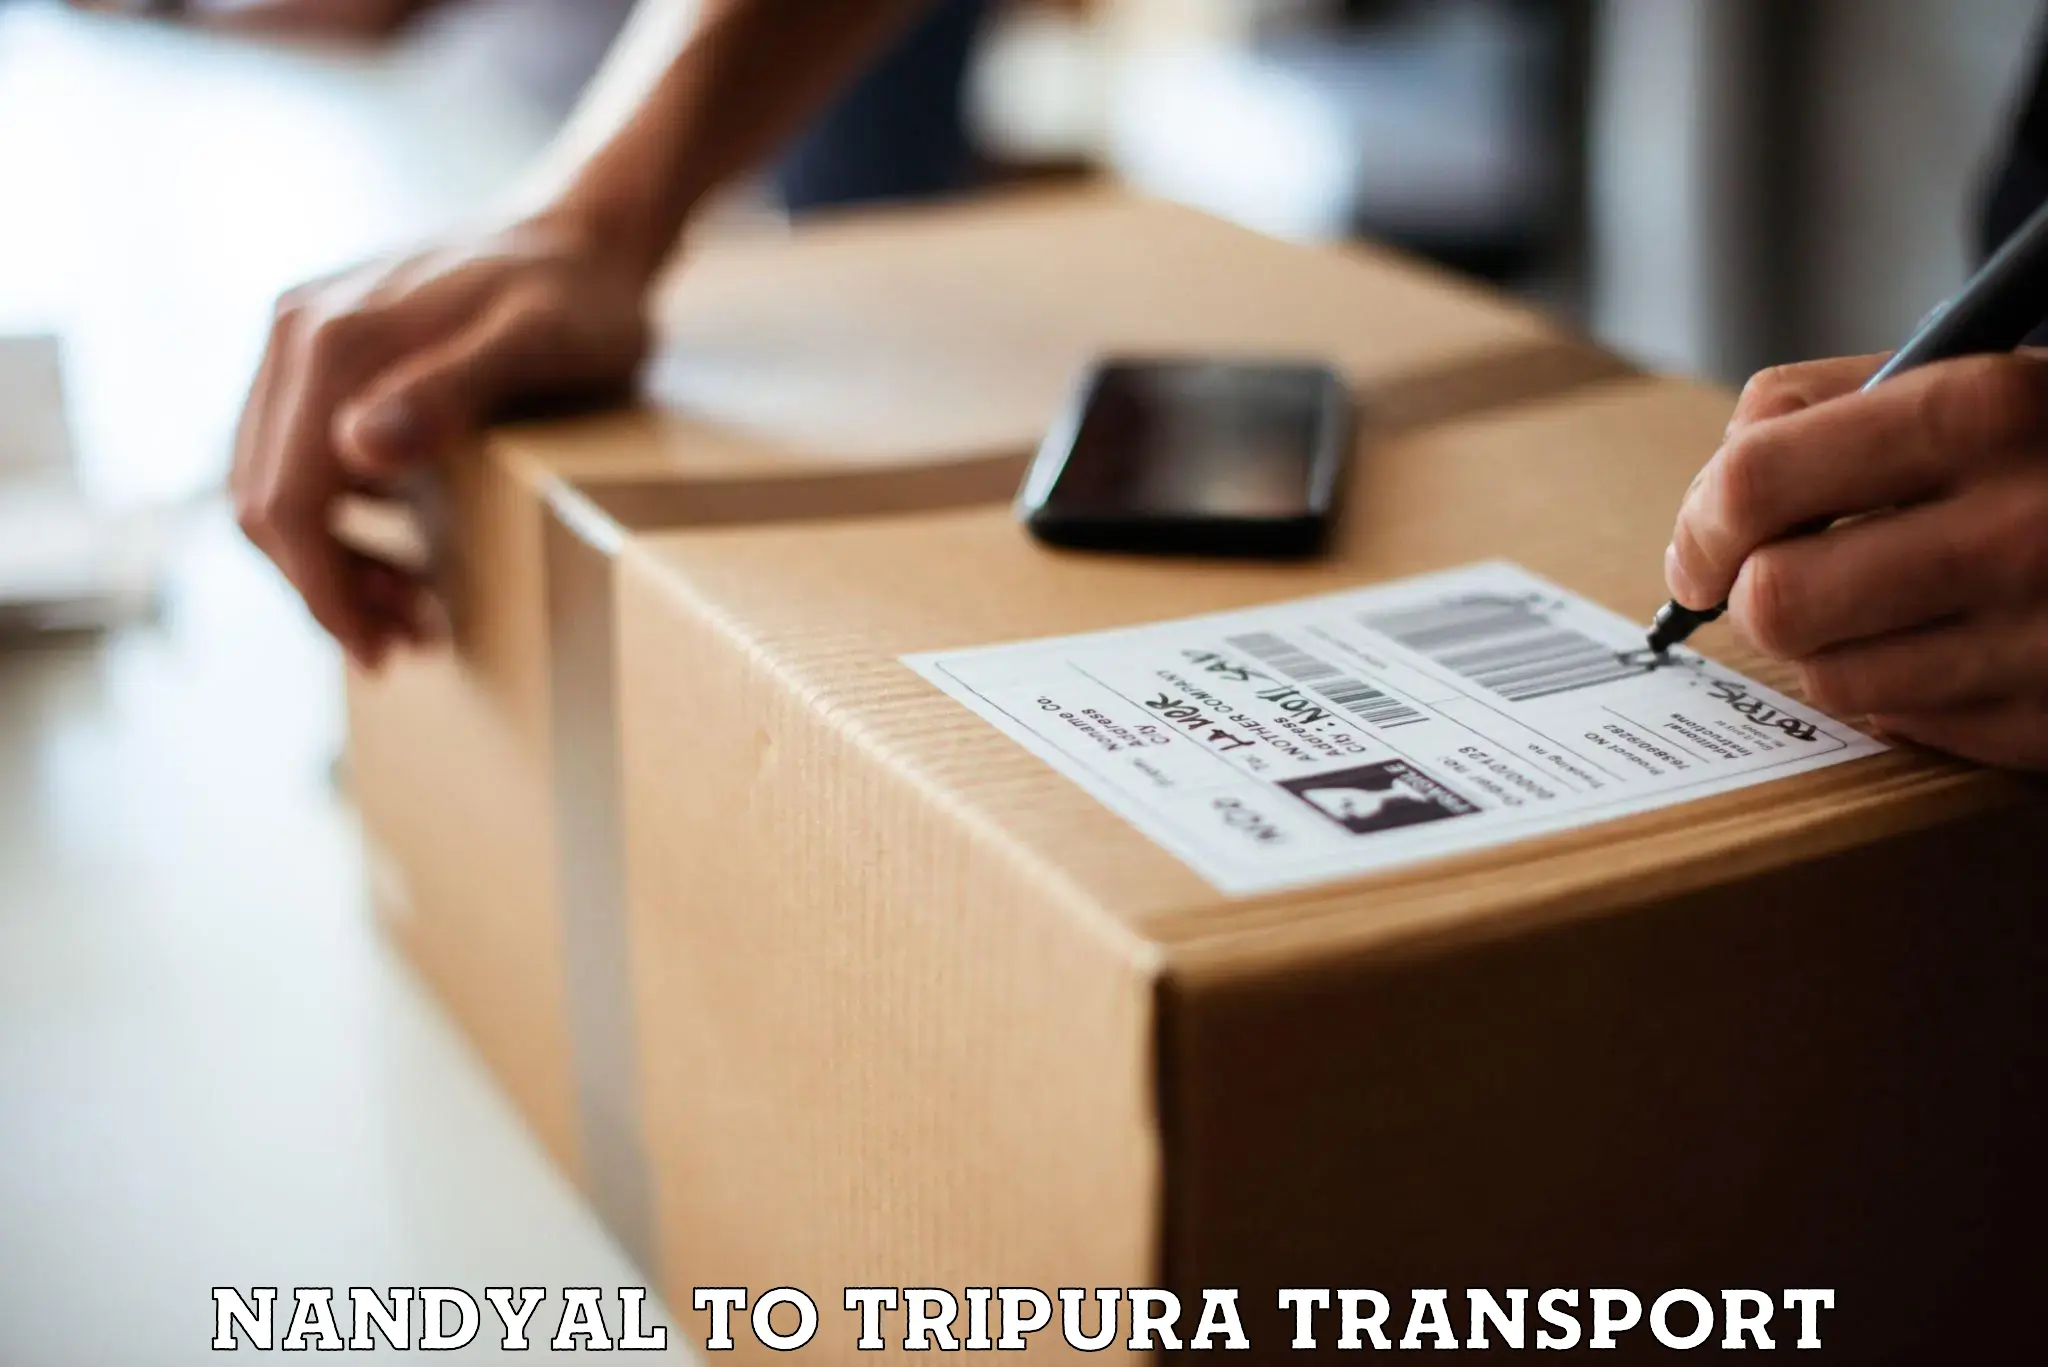 Online transport service Nandyal to Amarpur